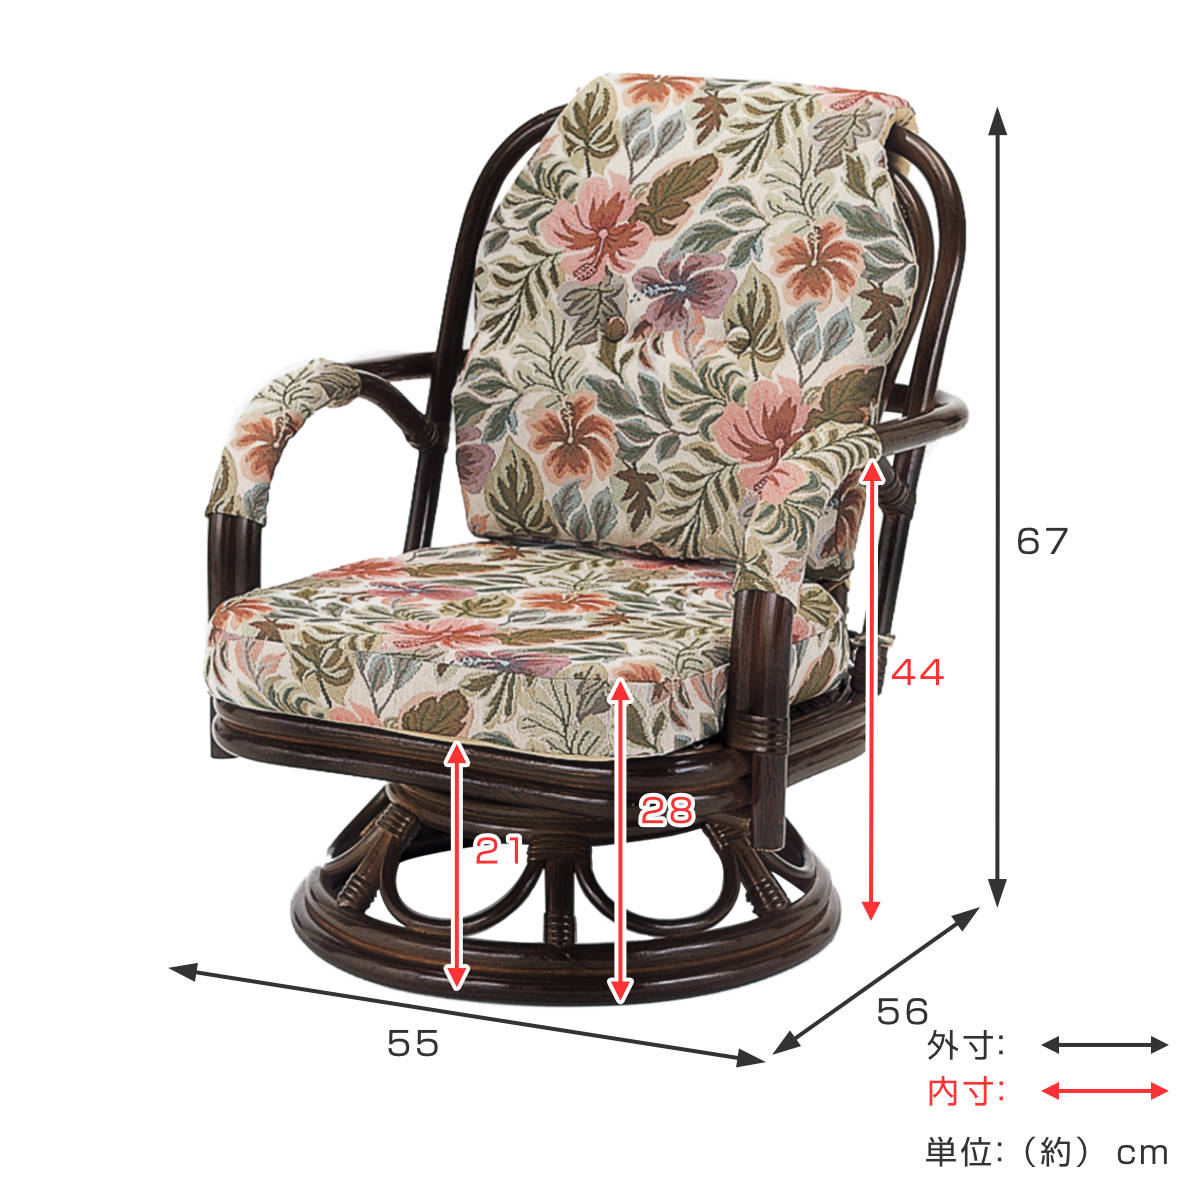 回転座椅子/籐椅子 〔幅64×奥行55×高さ61×座面高26cm〕 肘付き 花柄 RZ